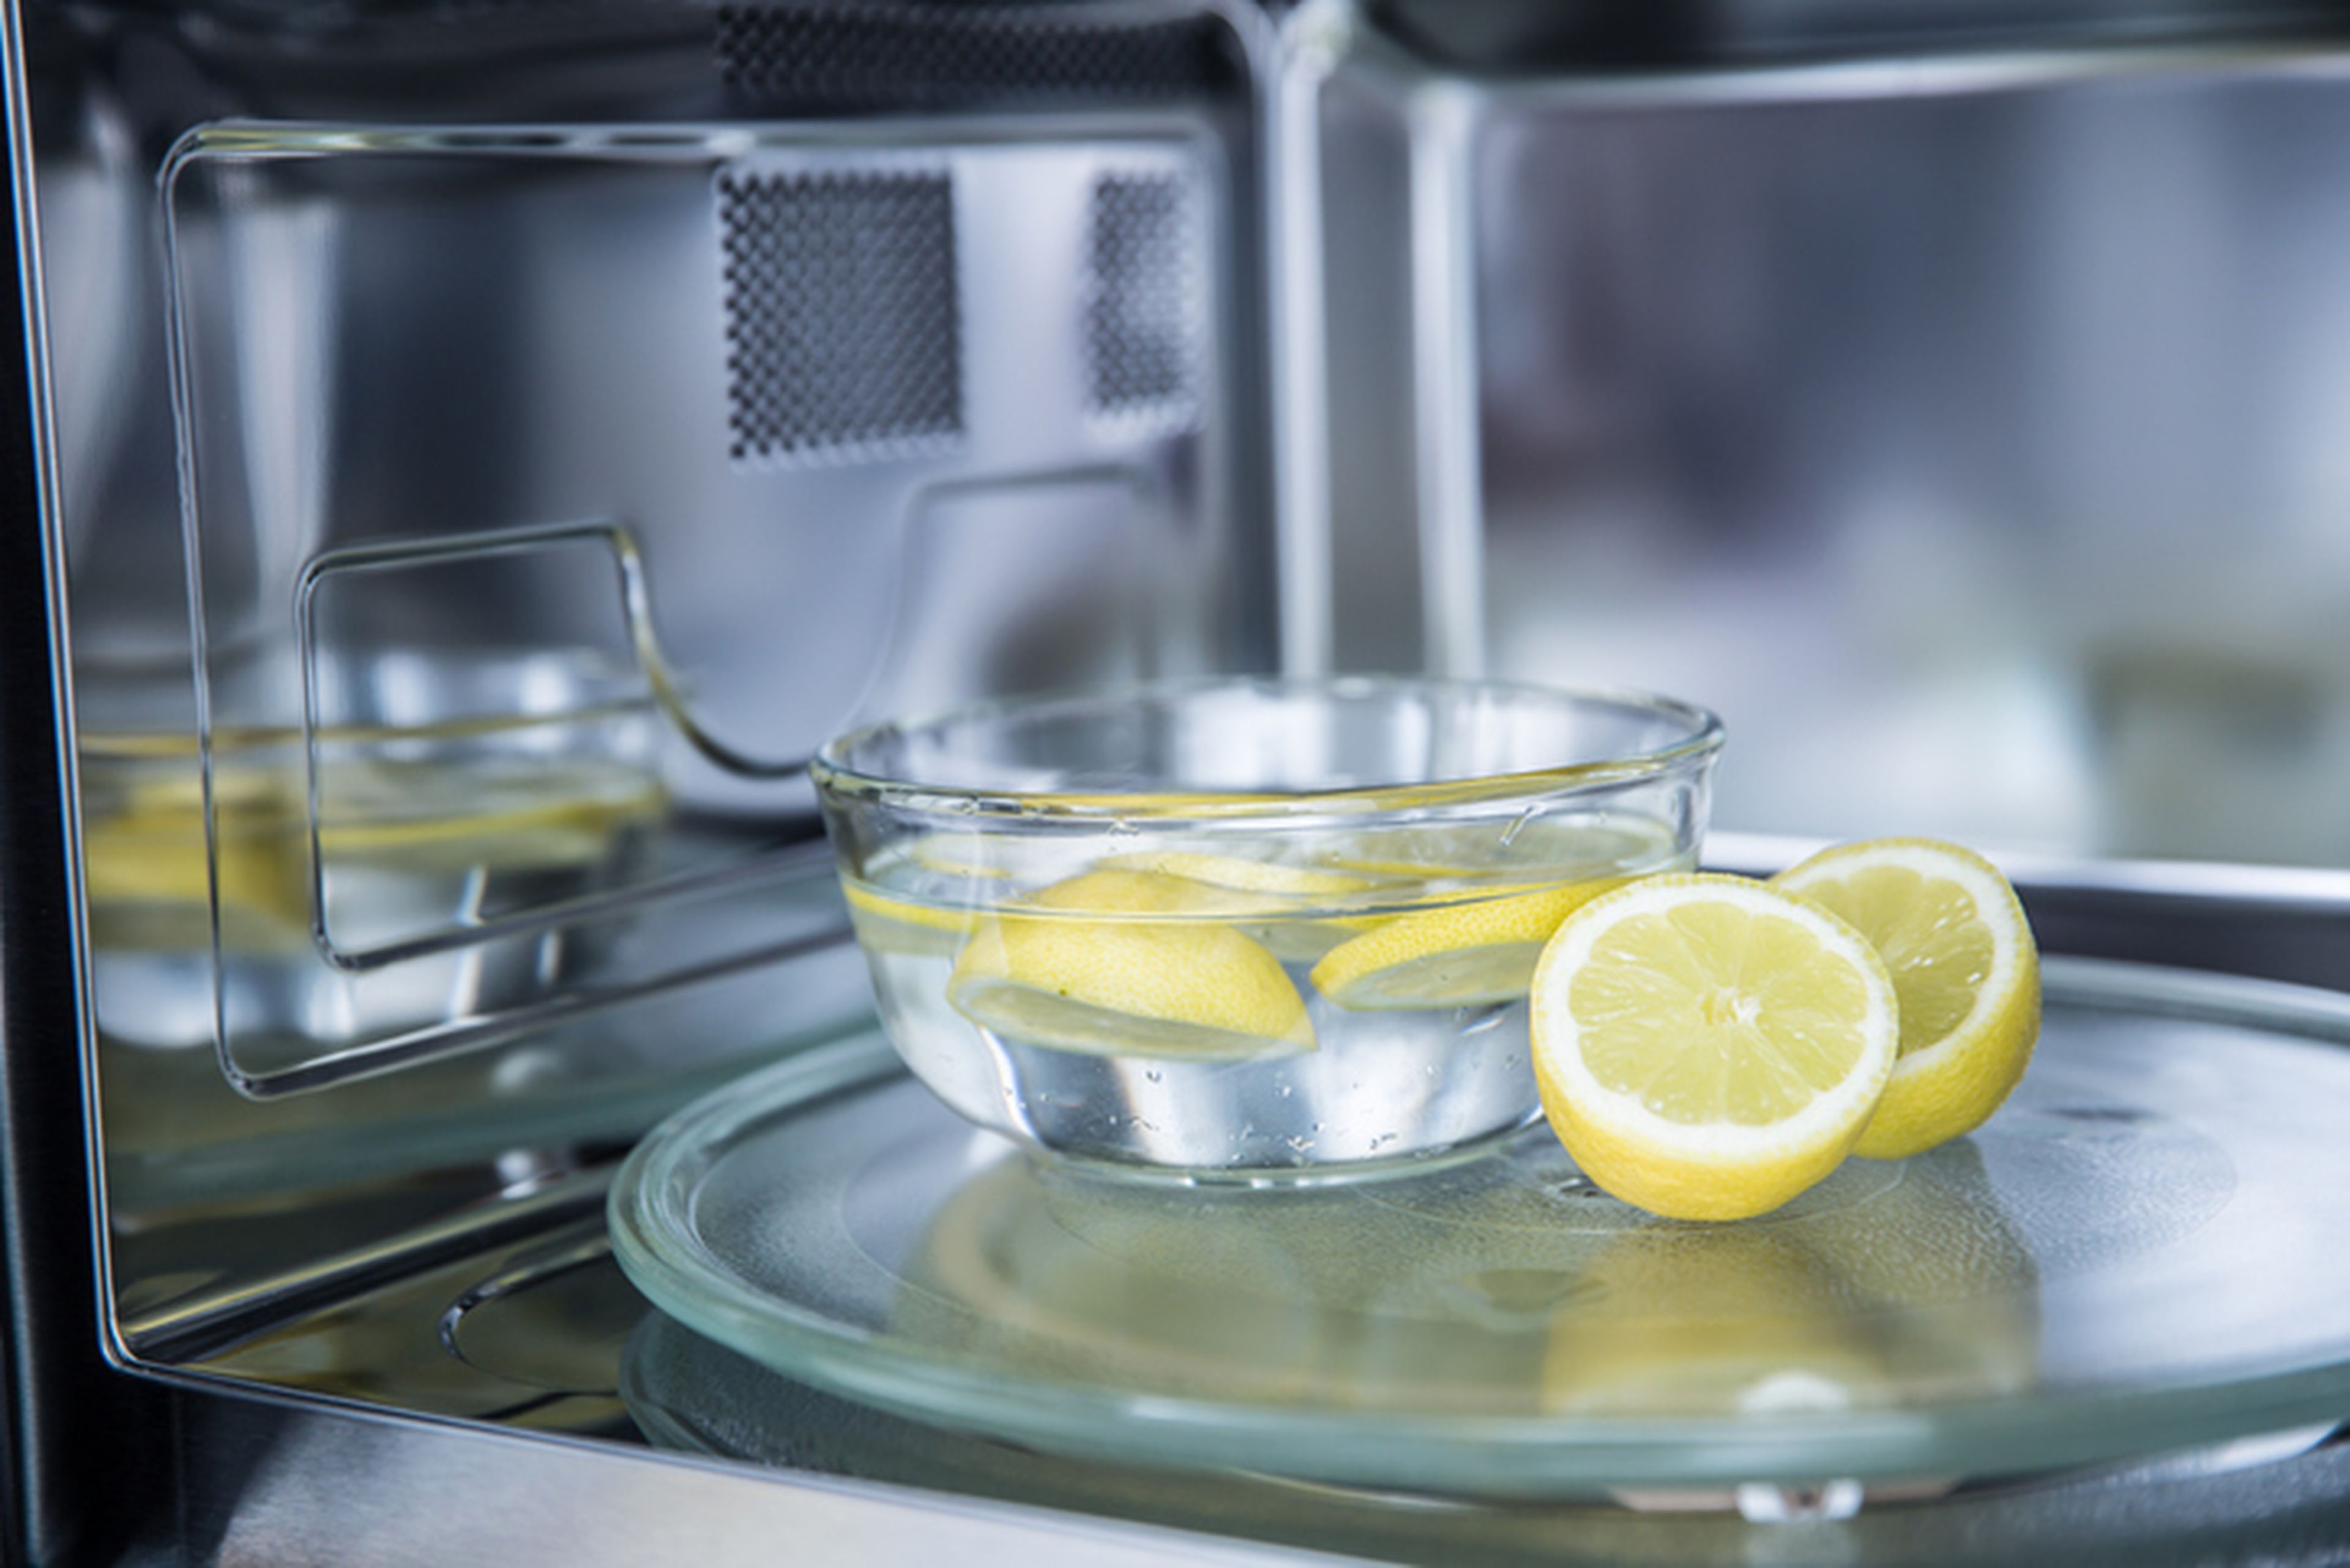 Limpieza del microondas con limones.